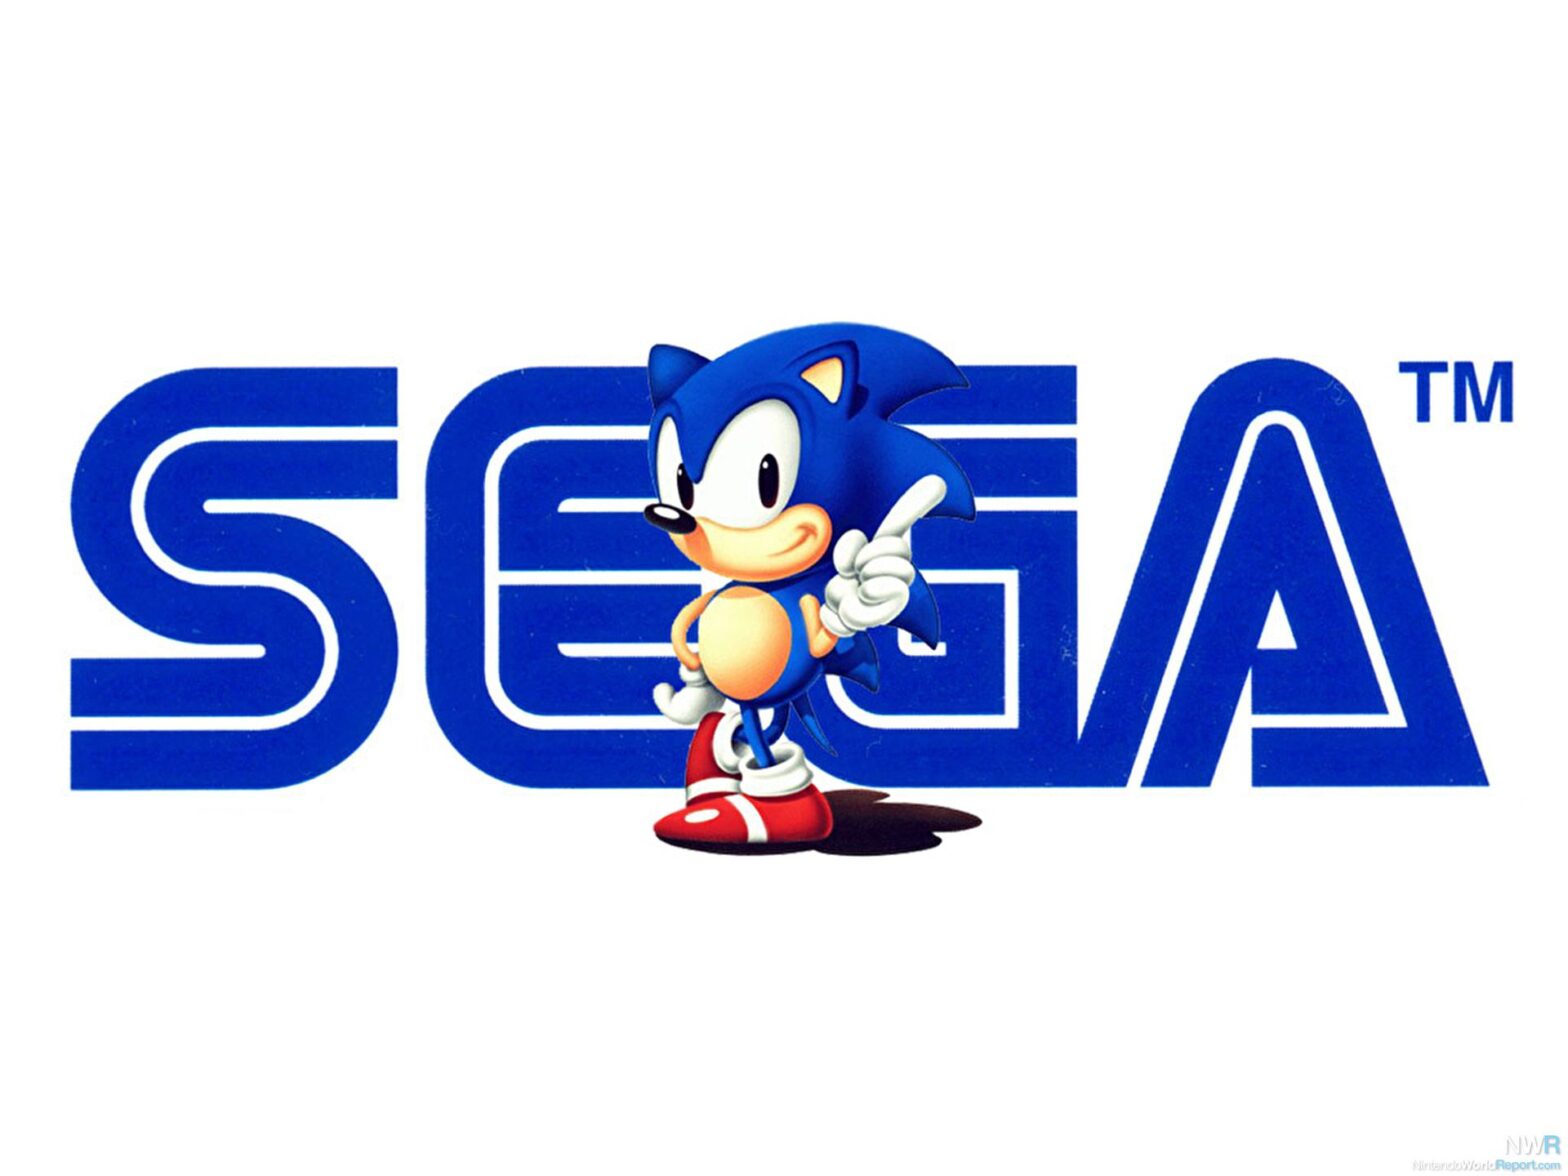 Sega annonce un nouveau jeu intégrant NFT et Blockchain